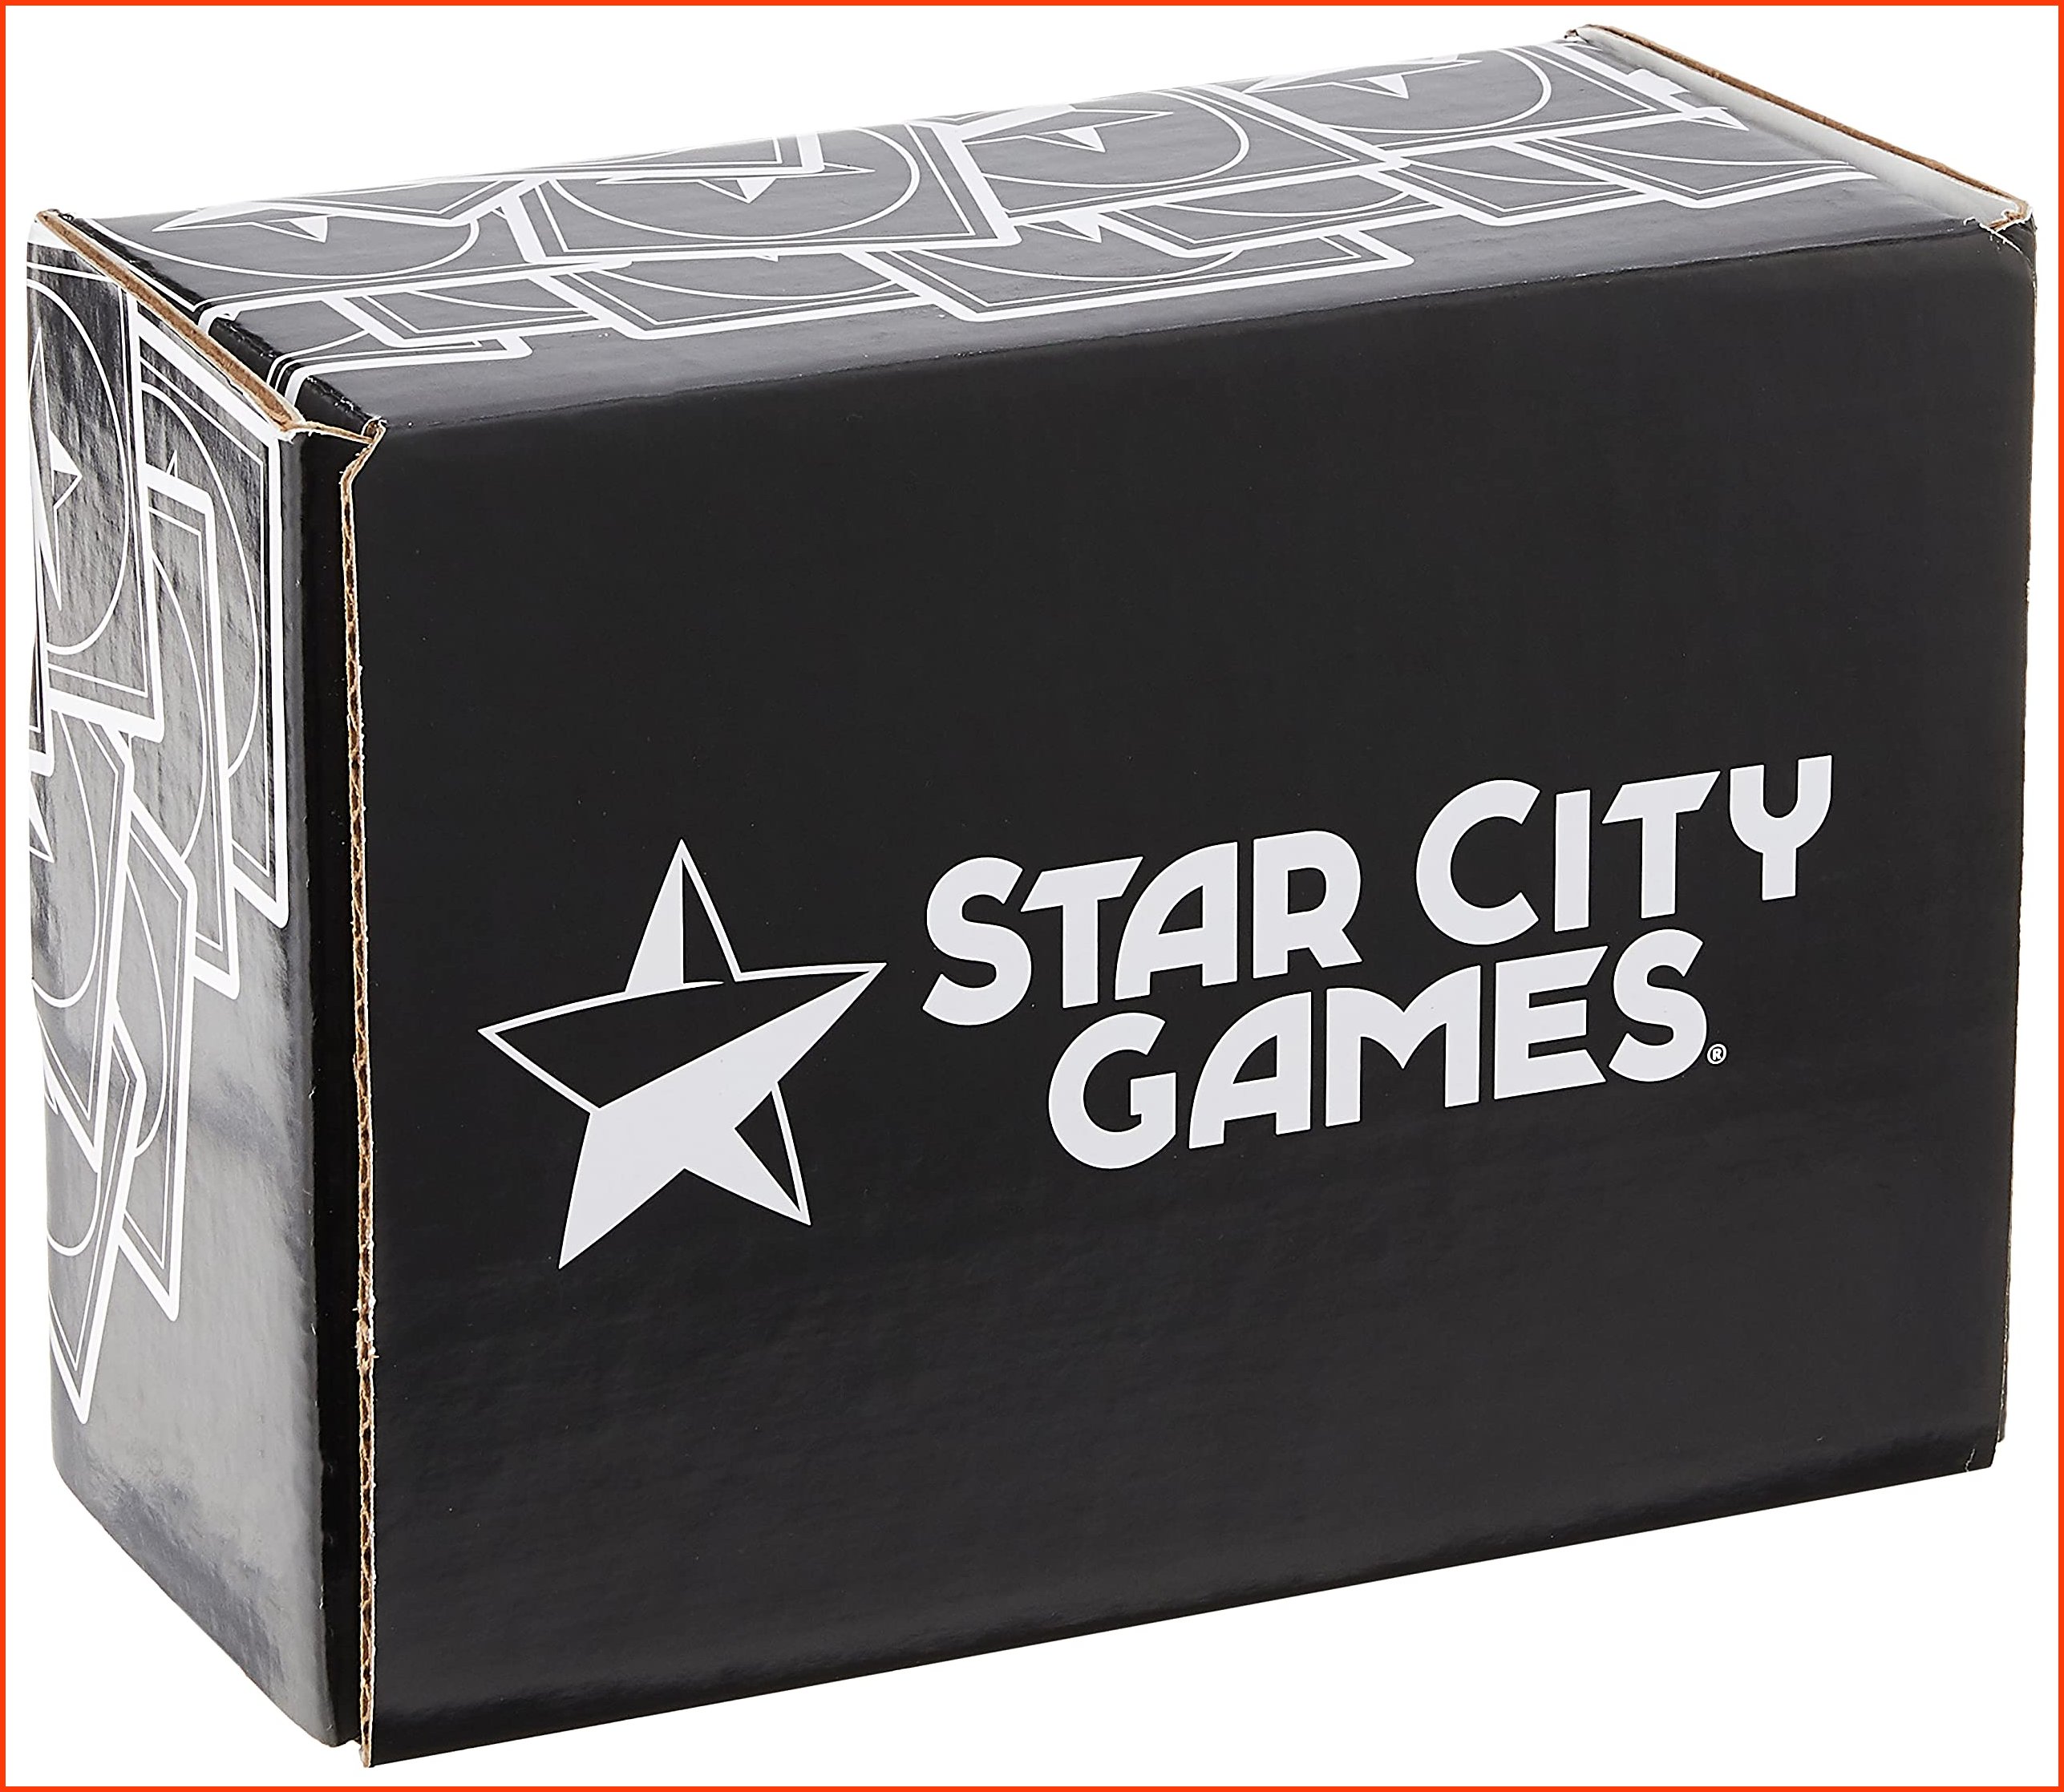 並行輸入品Star City Games 1000 Assorted Magic The Gathering Cards Gold Collection Model Number B00JJXEX48